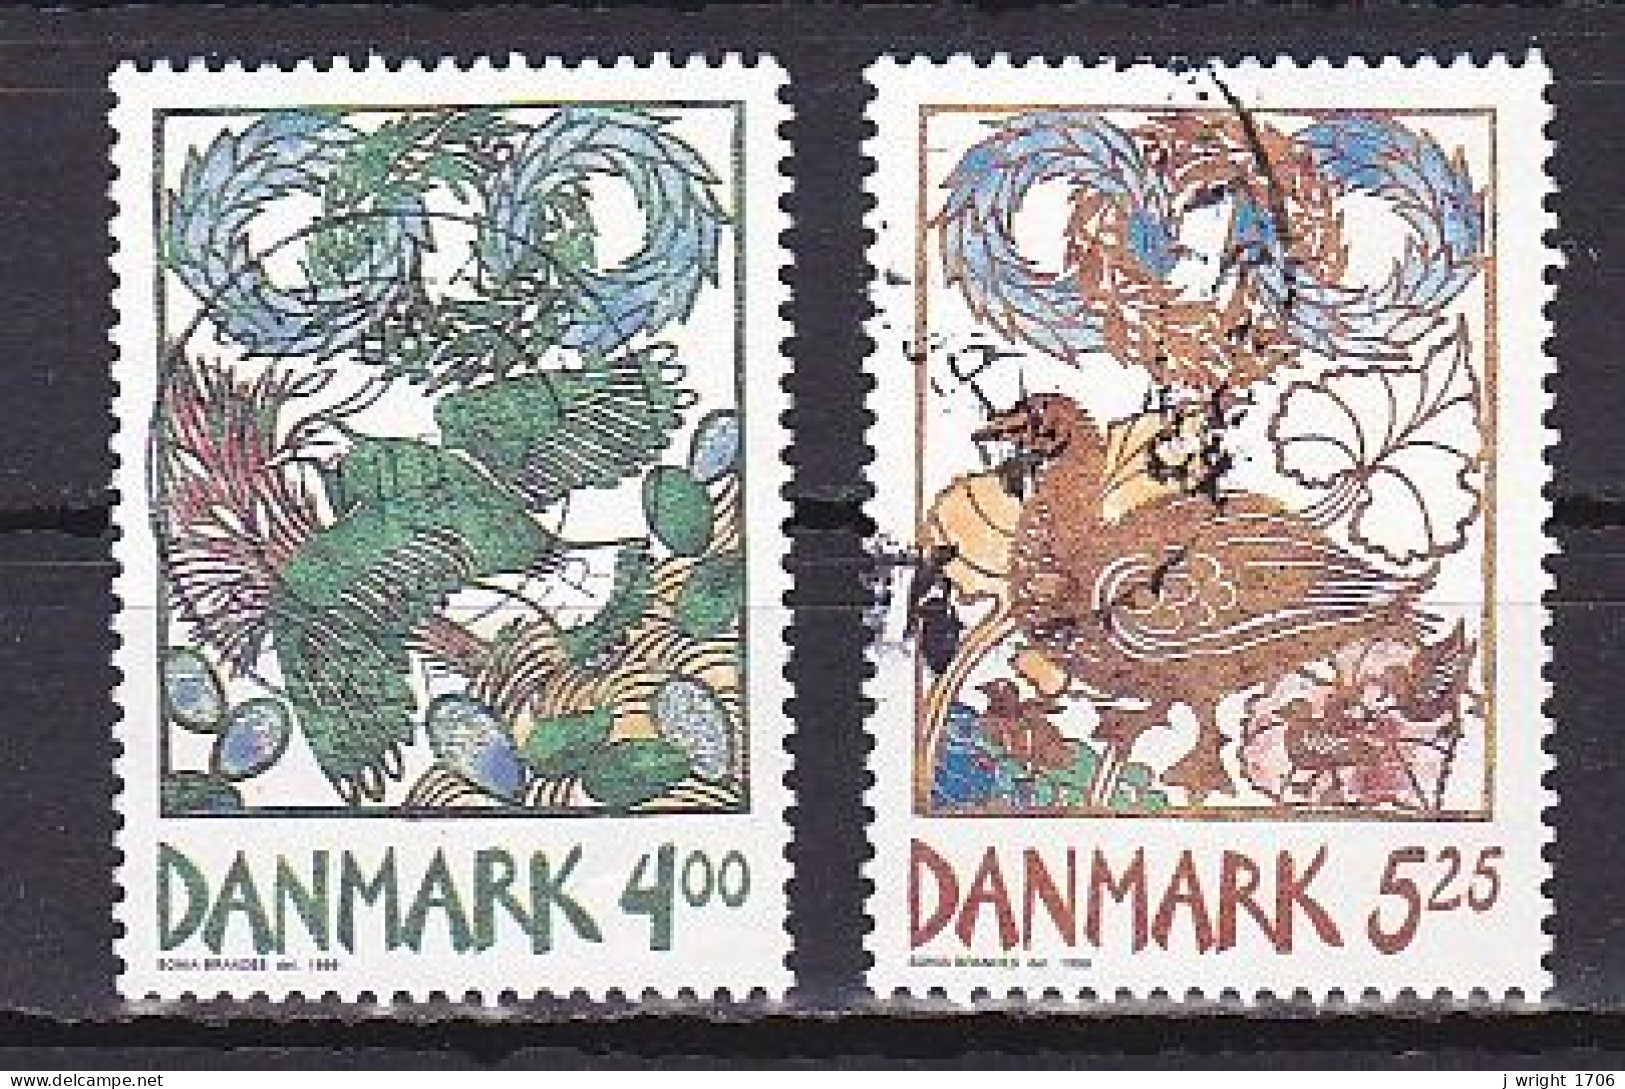 Denmark, 1999, Spring, Set, USED - Usati